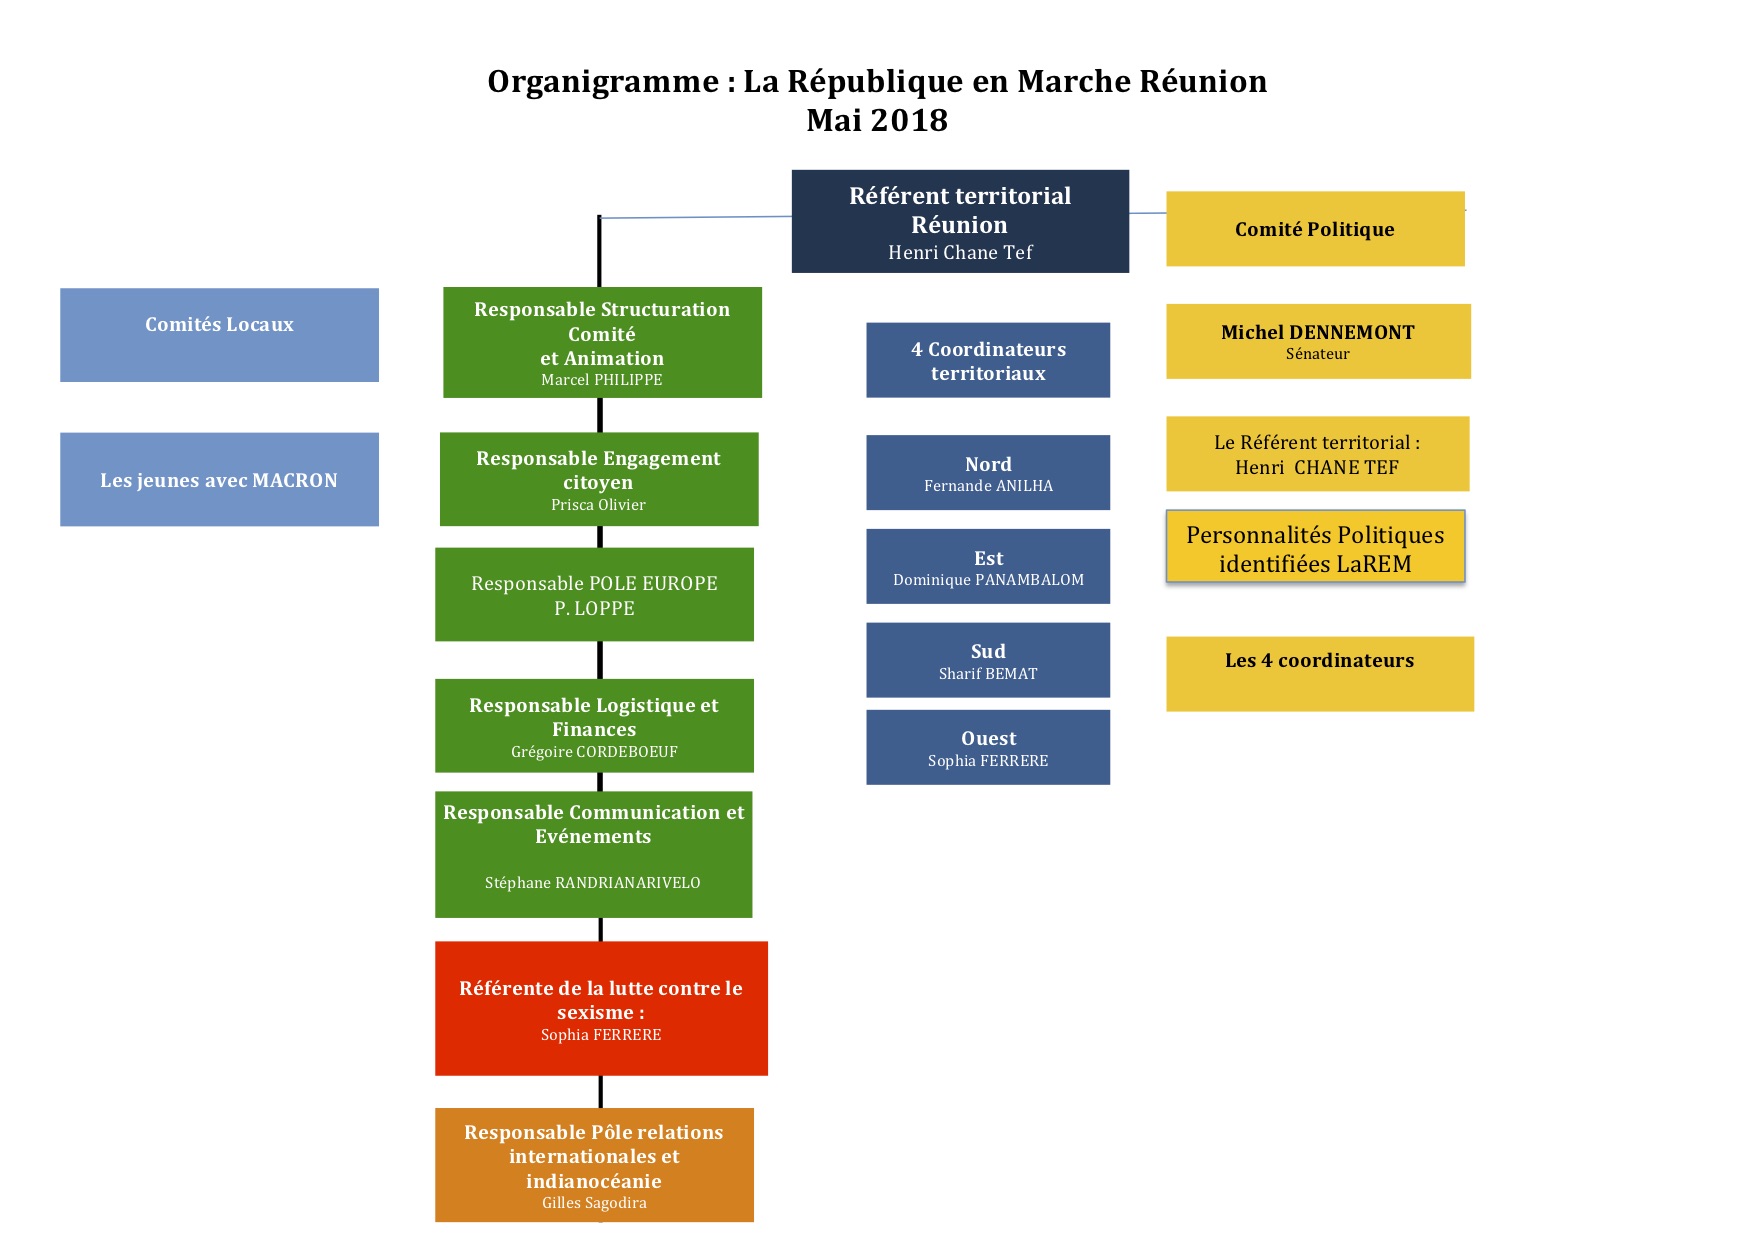 Nouvel organigramme pour La République en Marche à La Réunion, deux nouveaux coordonnateurs nommés